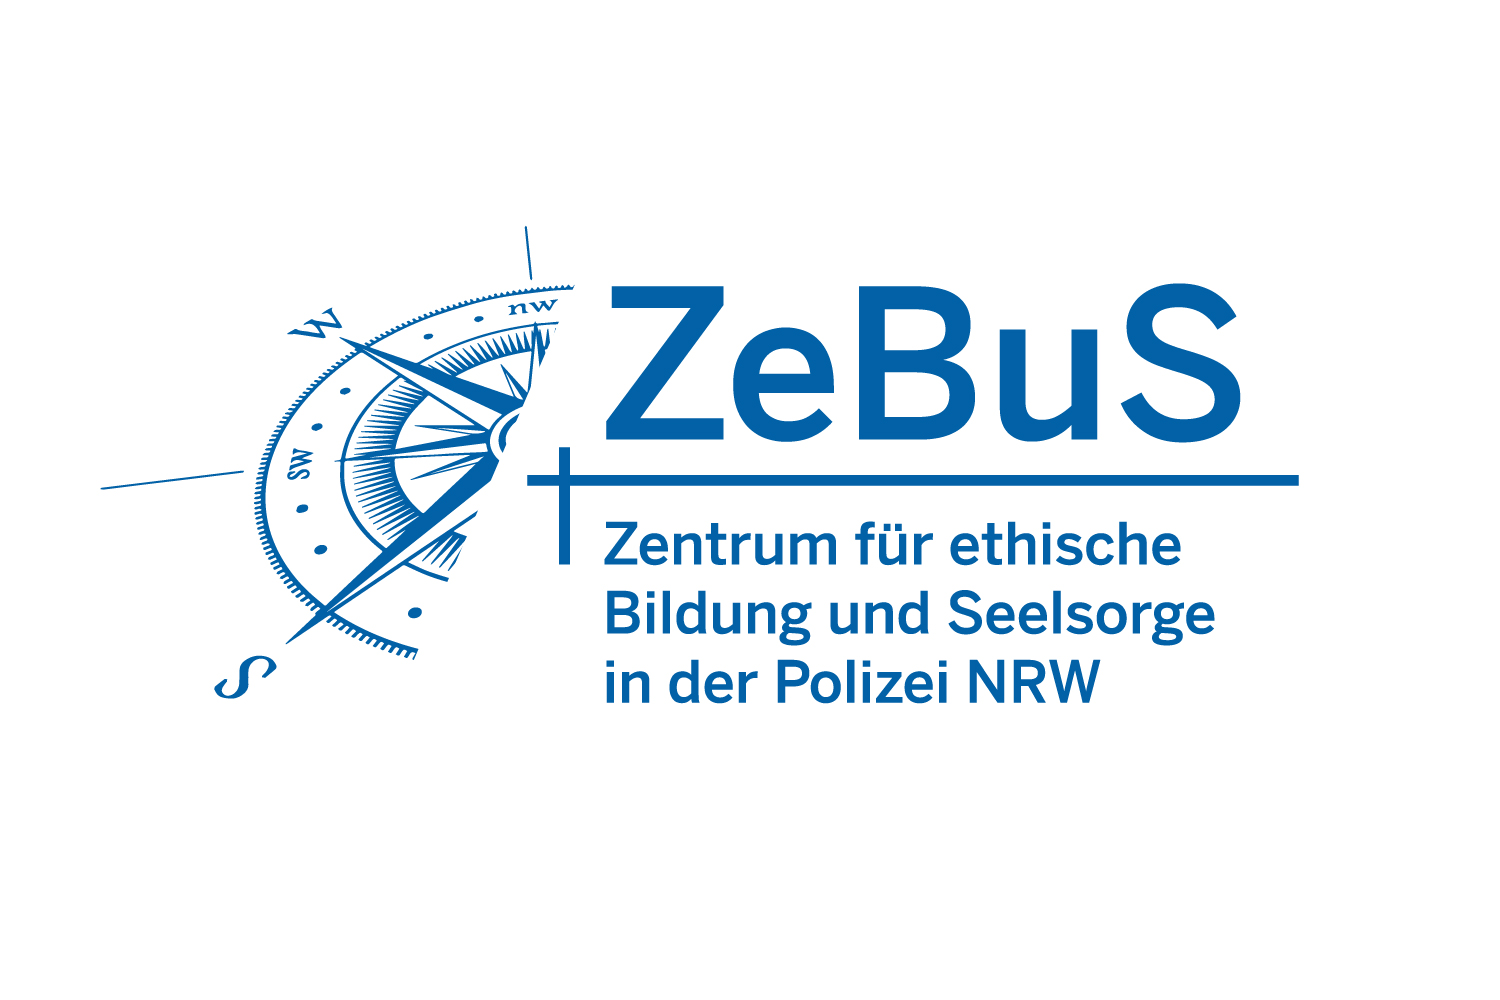 ZeBuS Logo